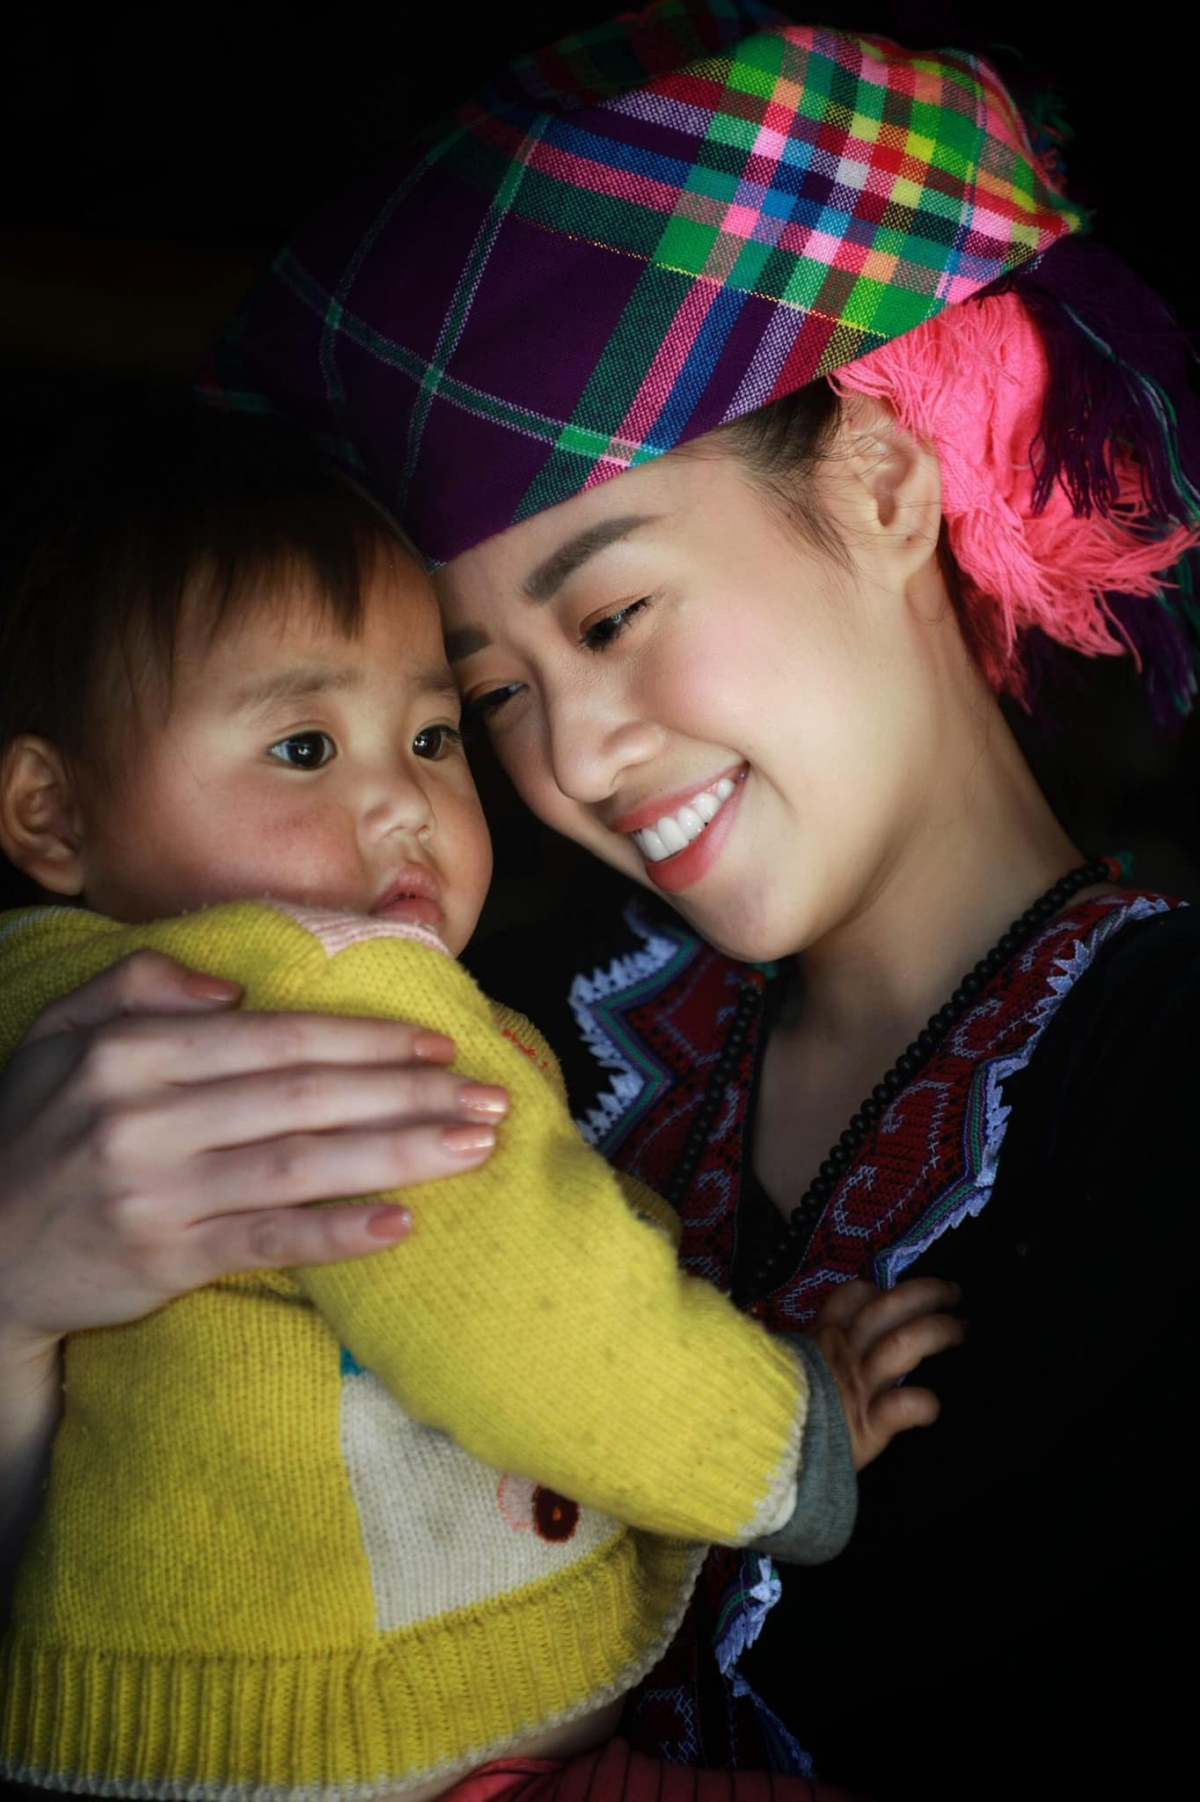 Trong ảnh, Hoa hậu Hoàn vũ Việt Nam tạo dáng cùng một em bé H'Mông cực kỳ đáng yêu